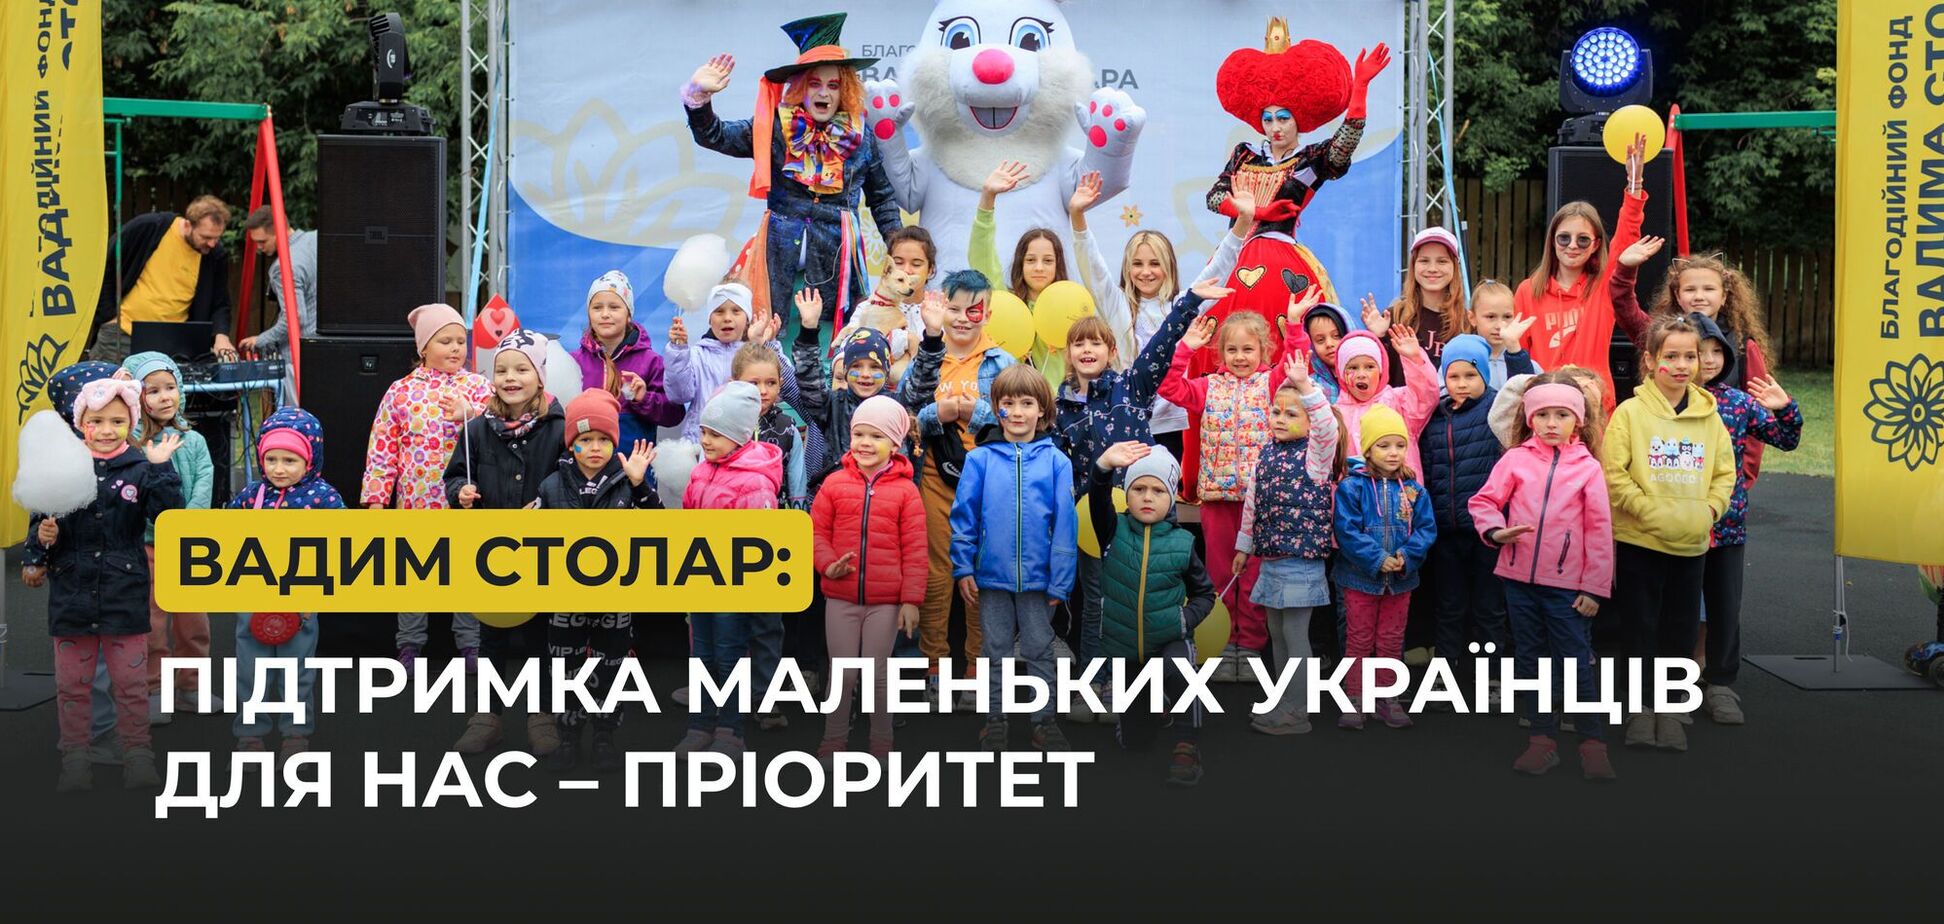 Война лишила детей простых радостей: Вадим Столар рассказал о помощи маленьким украинцам